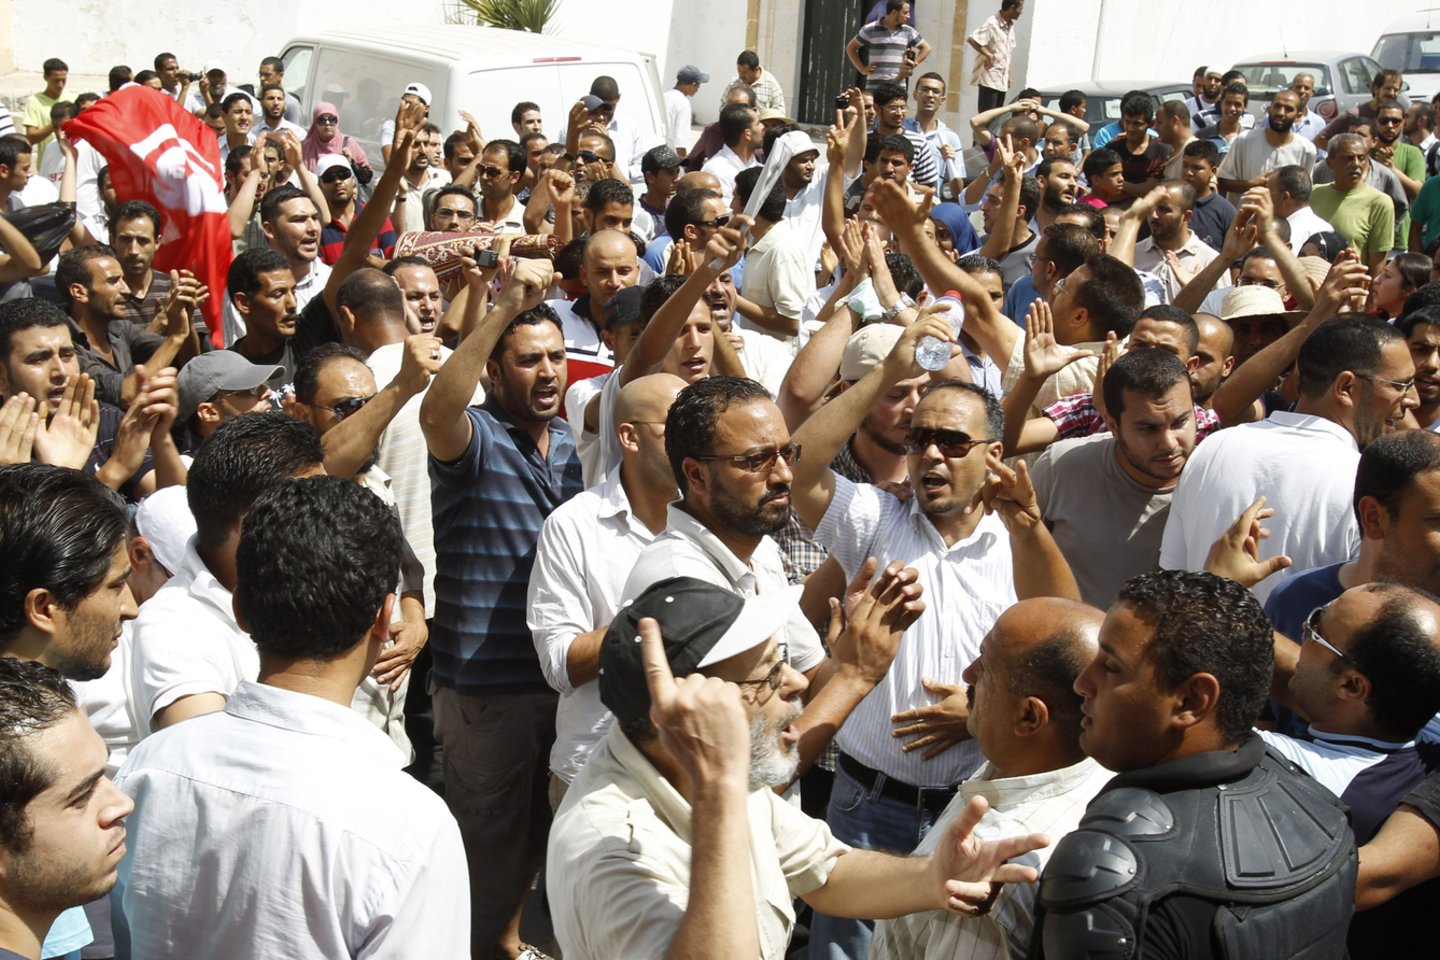 2010 metais pasaulyje kilo „Arabų pavasario“ pavadinimą įgavusi protestų banga, kuri Artimuosiuose Rytuose ir Šiaurės Afrikoje nuvertė ne vieną vyriausybę.<br> Reuters/Scanpix nuotr.